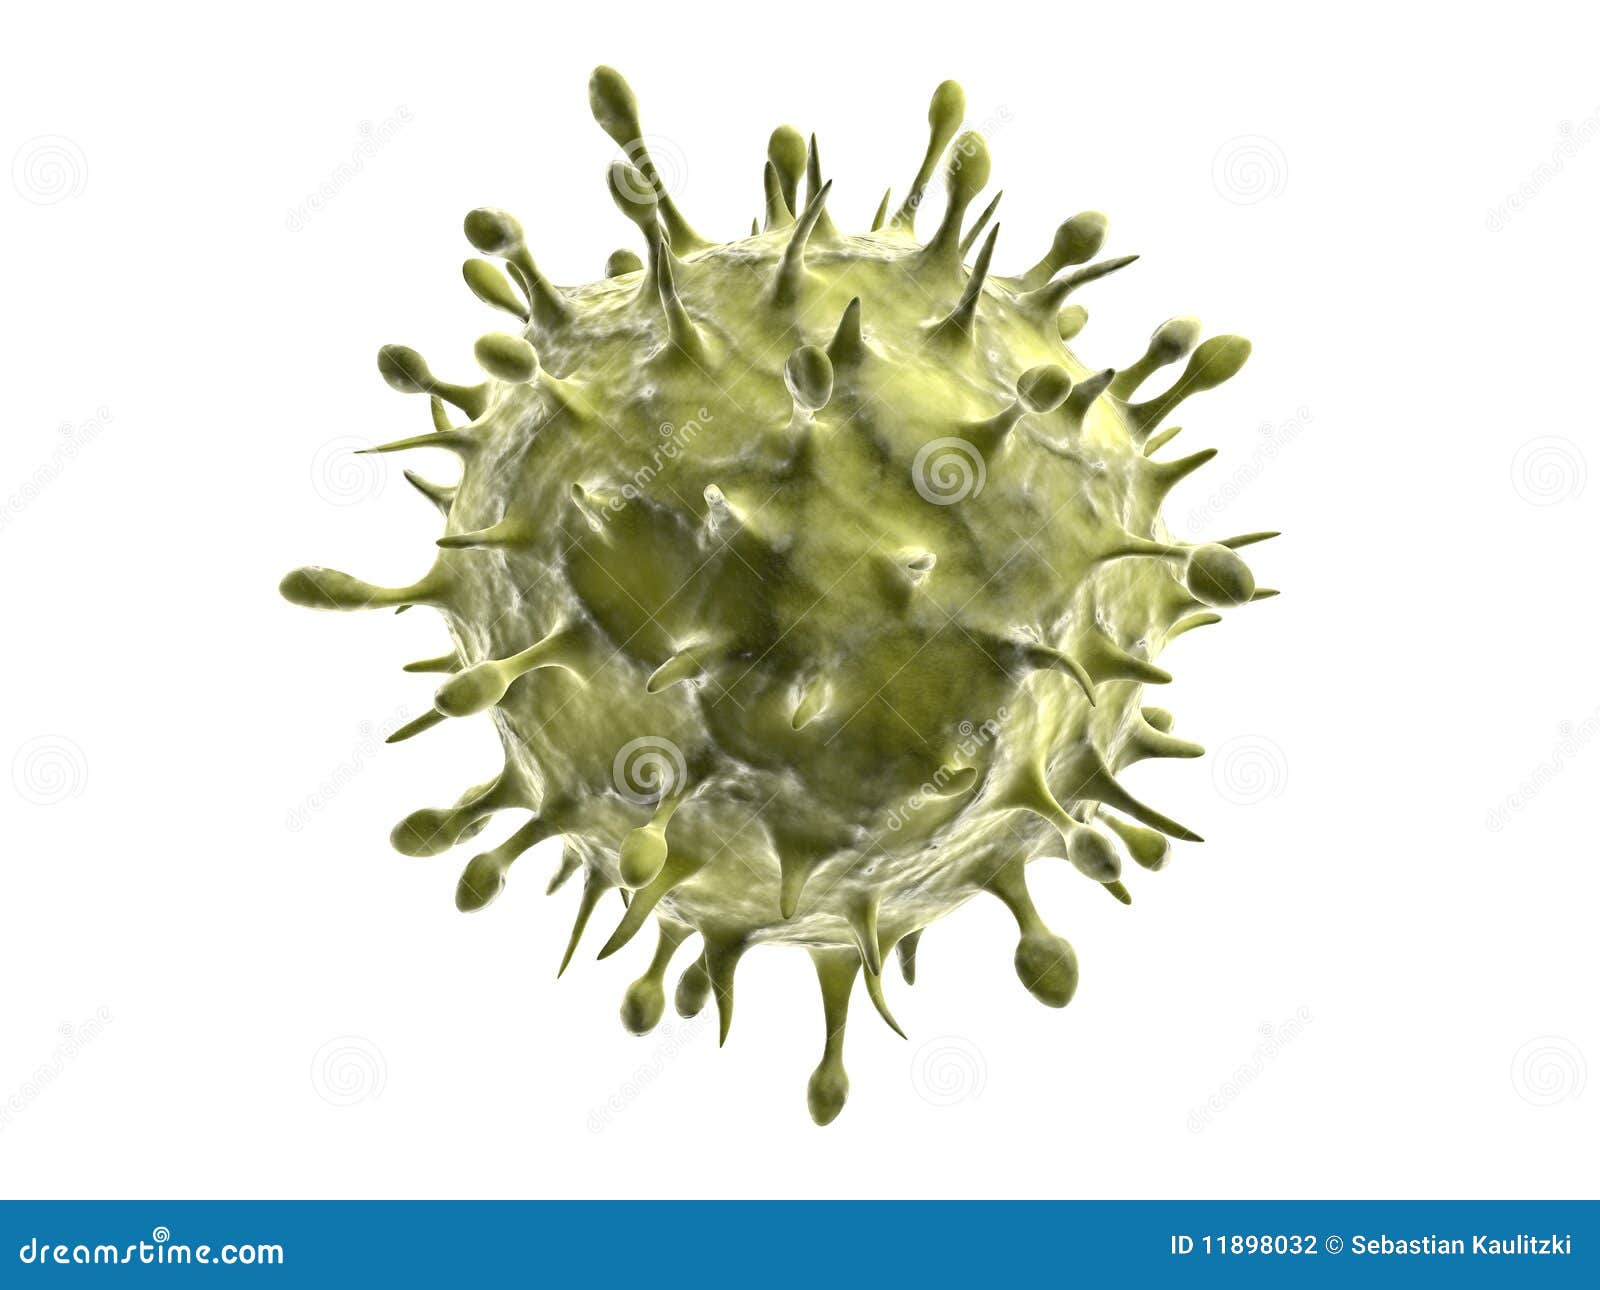 h1n1 virus